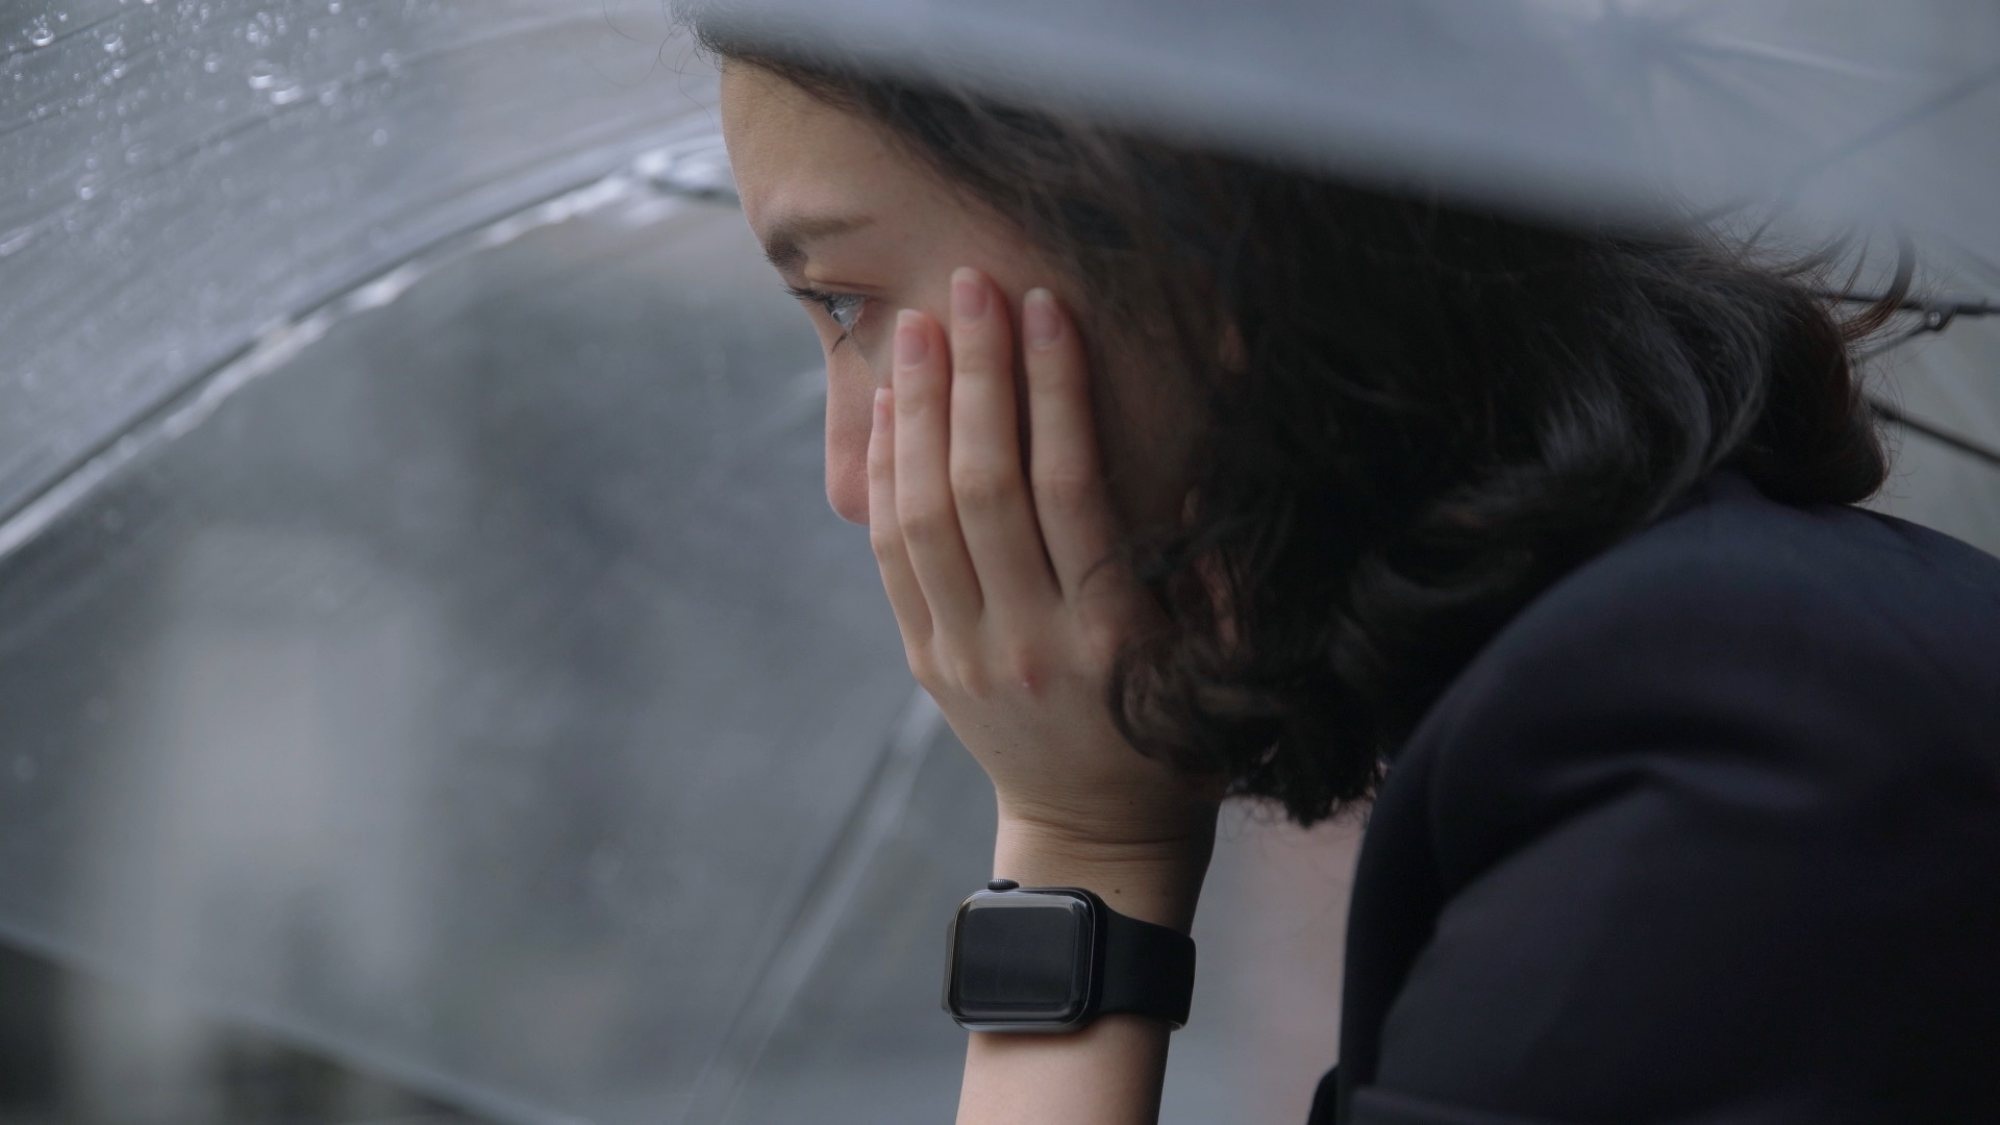 View - Phim về vụ bạo lực tình dục chấn động Nhật Bản nổi tiếng toàn cầu | Báo Dân trí